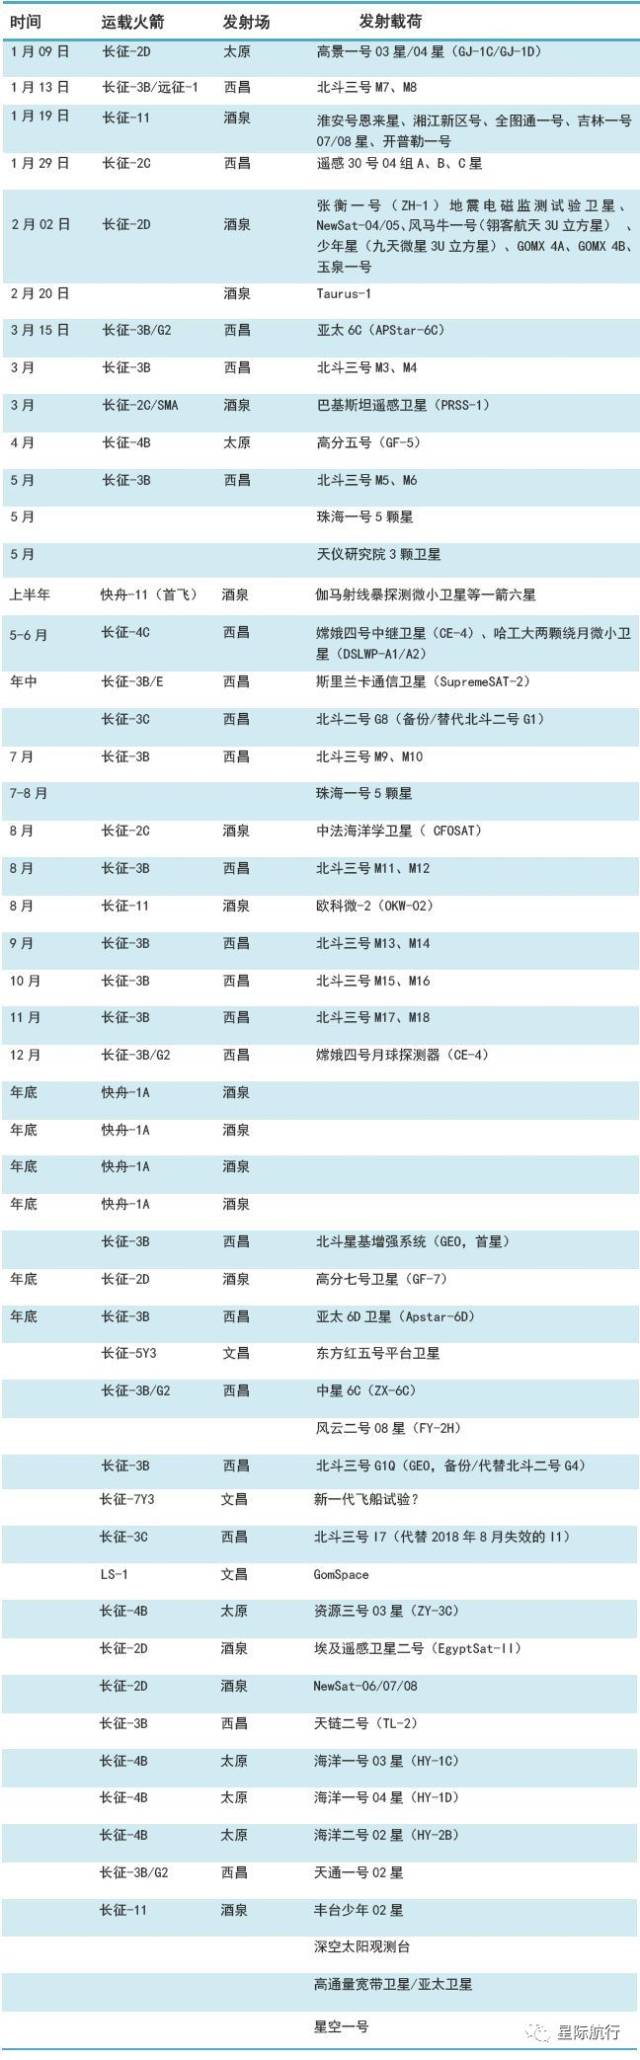 2018年中国航天发射预报时间表仅供参考